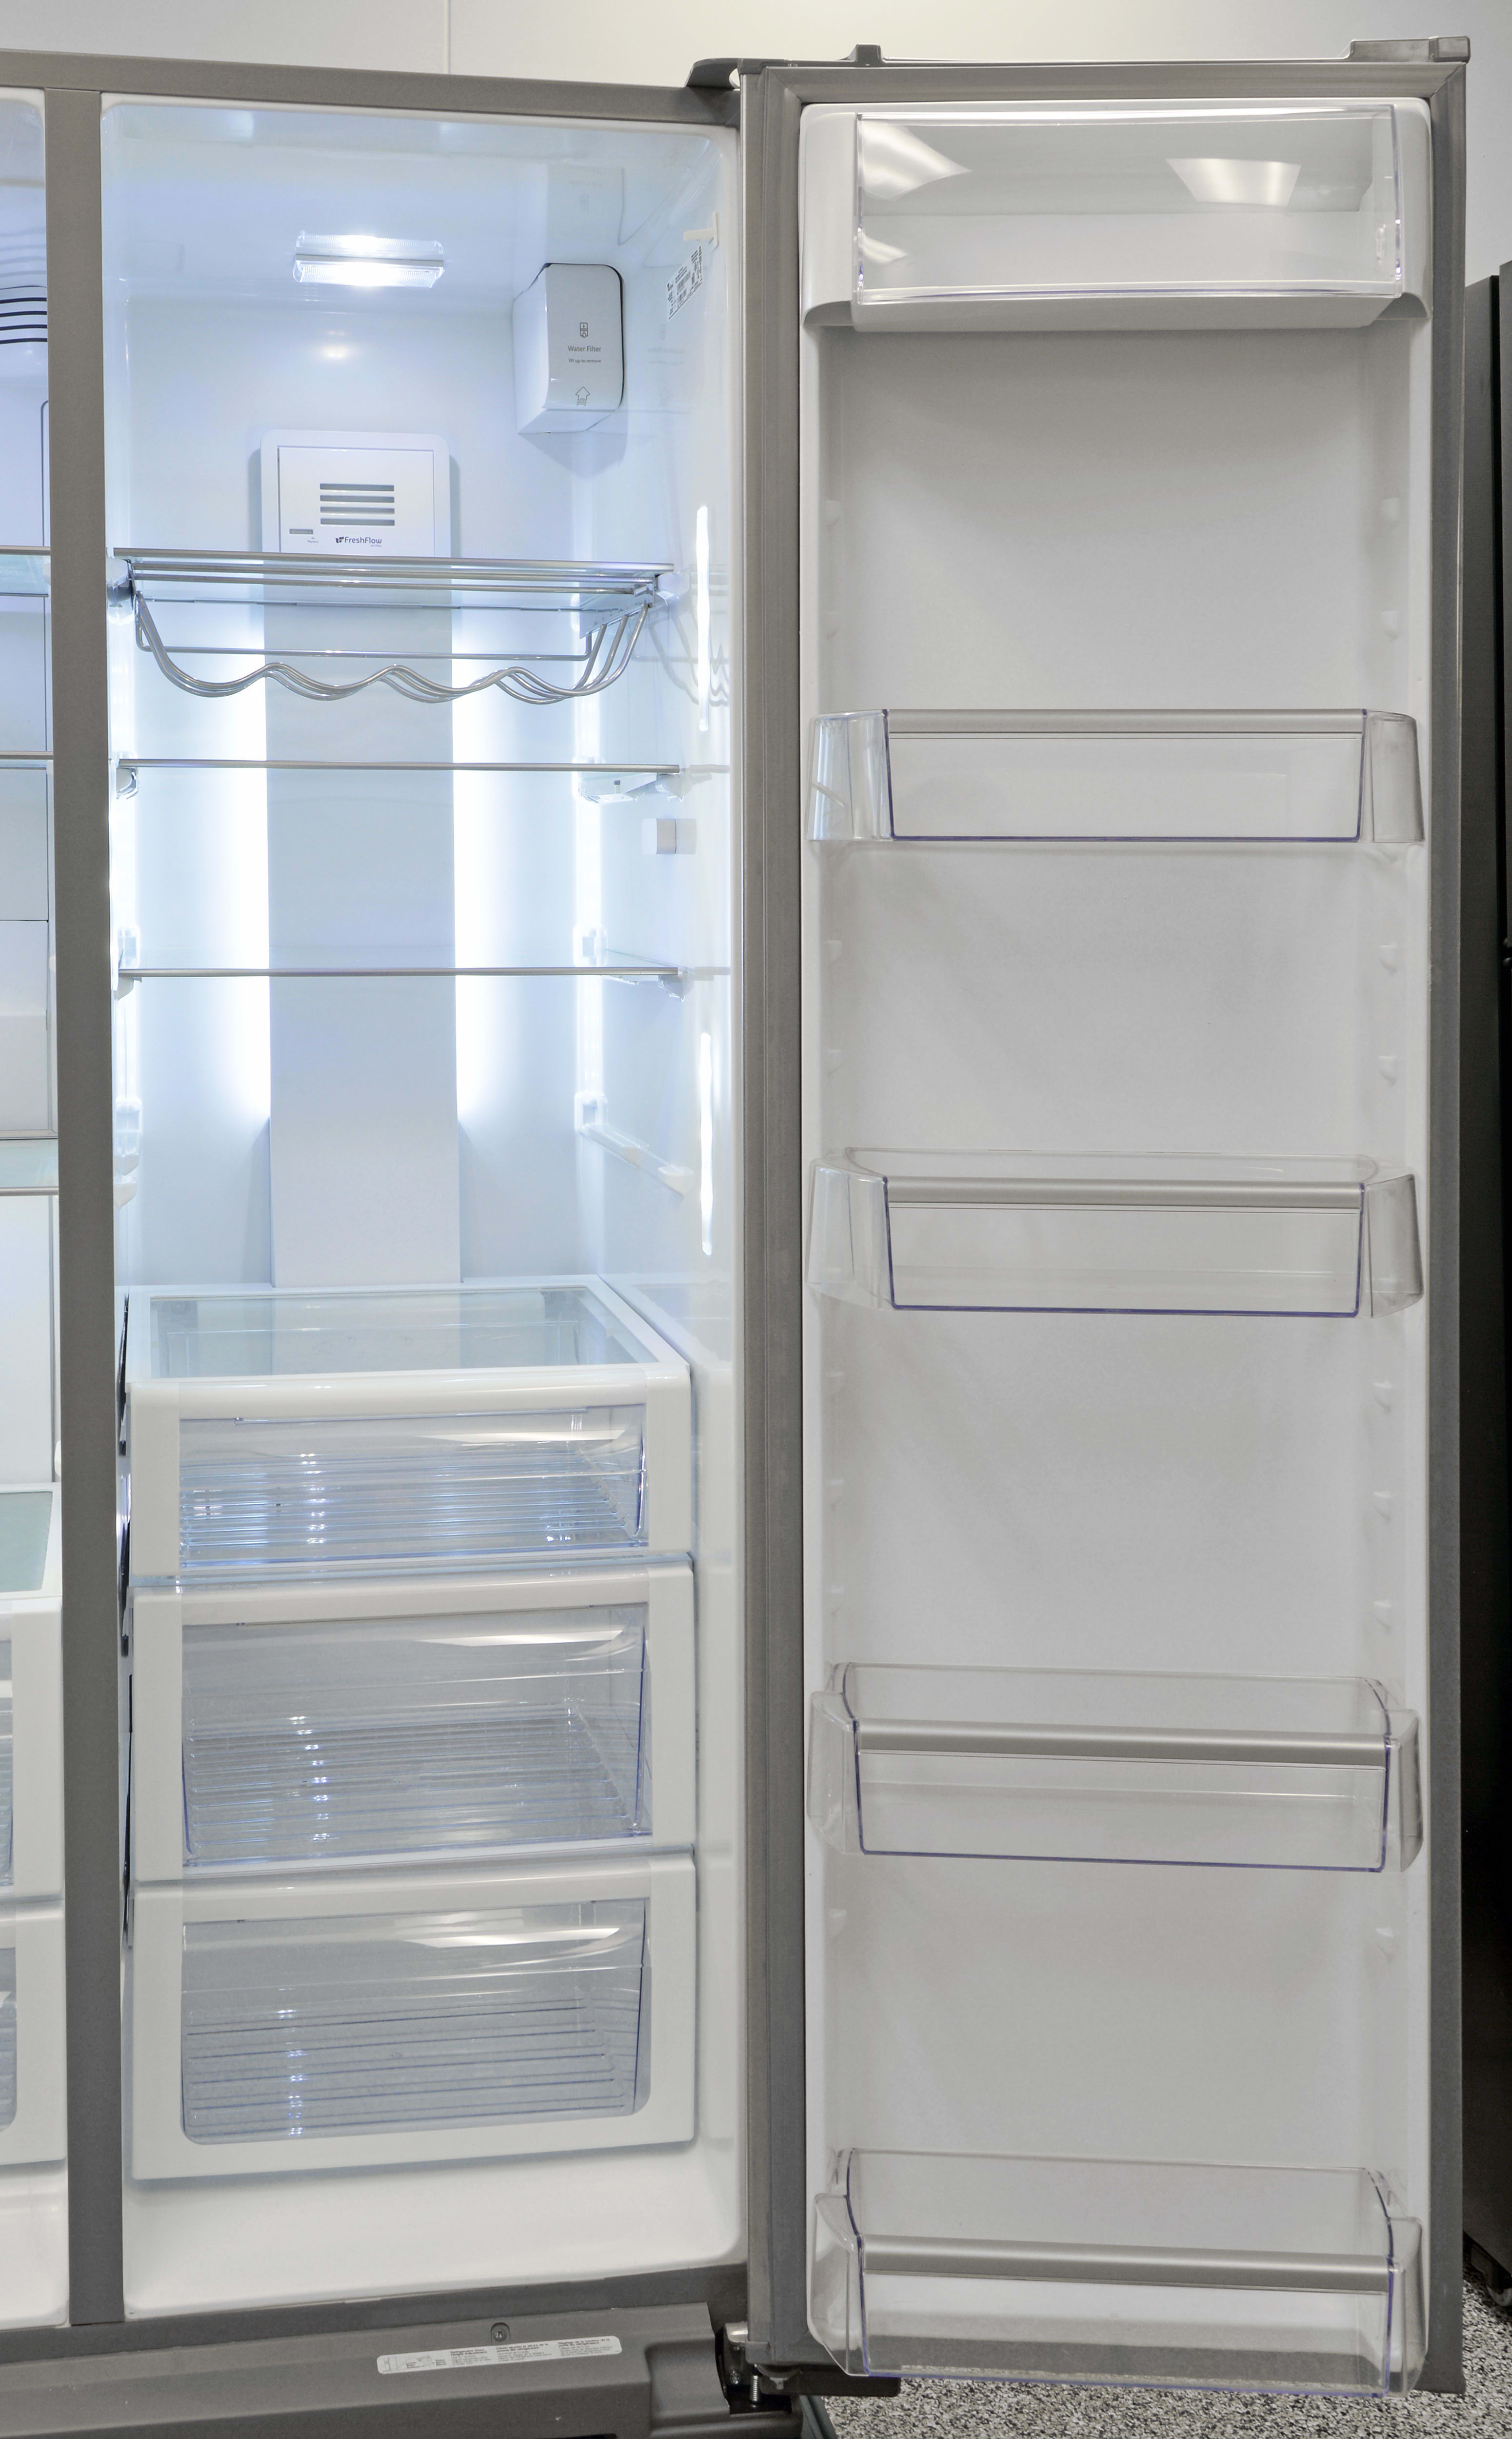 Whirlpool WRS975SIDM Refrigerator Review - Reviewed.com Refrigerators